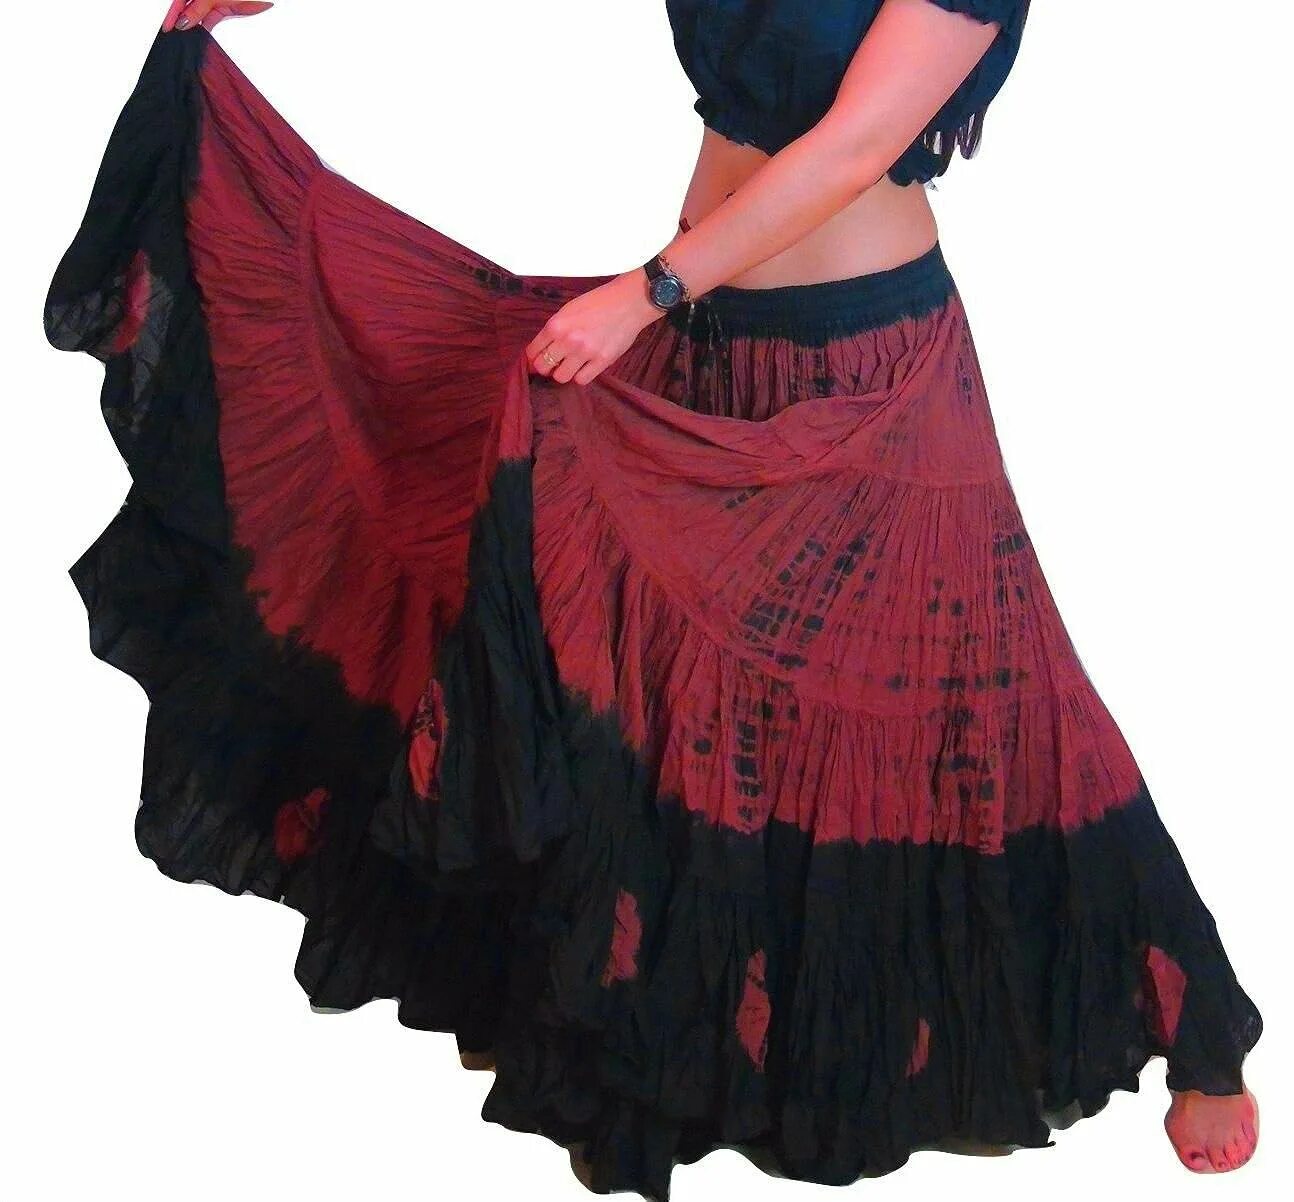 Купить цыганскую юбку. Юбка цыганки. Цыганская юбка. Цыганская юбка для танца. Цыганский костюм женский.